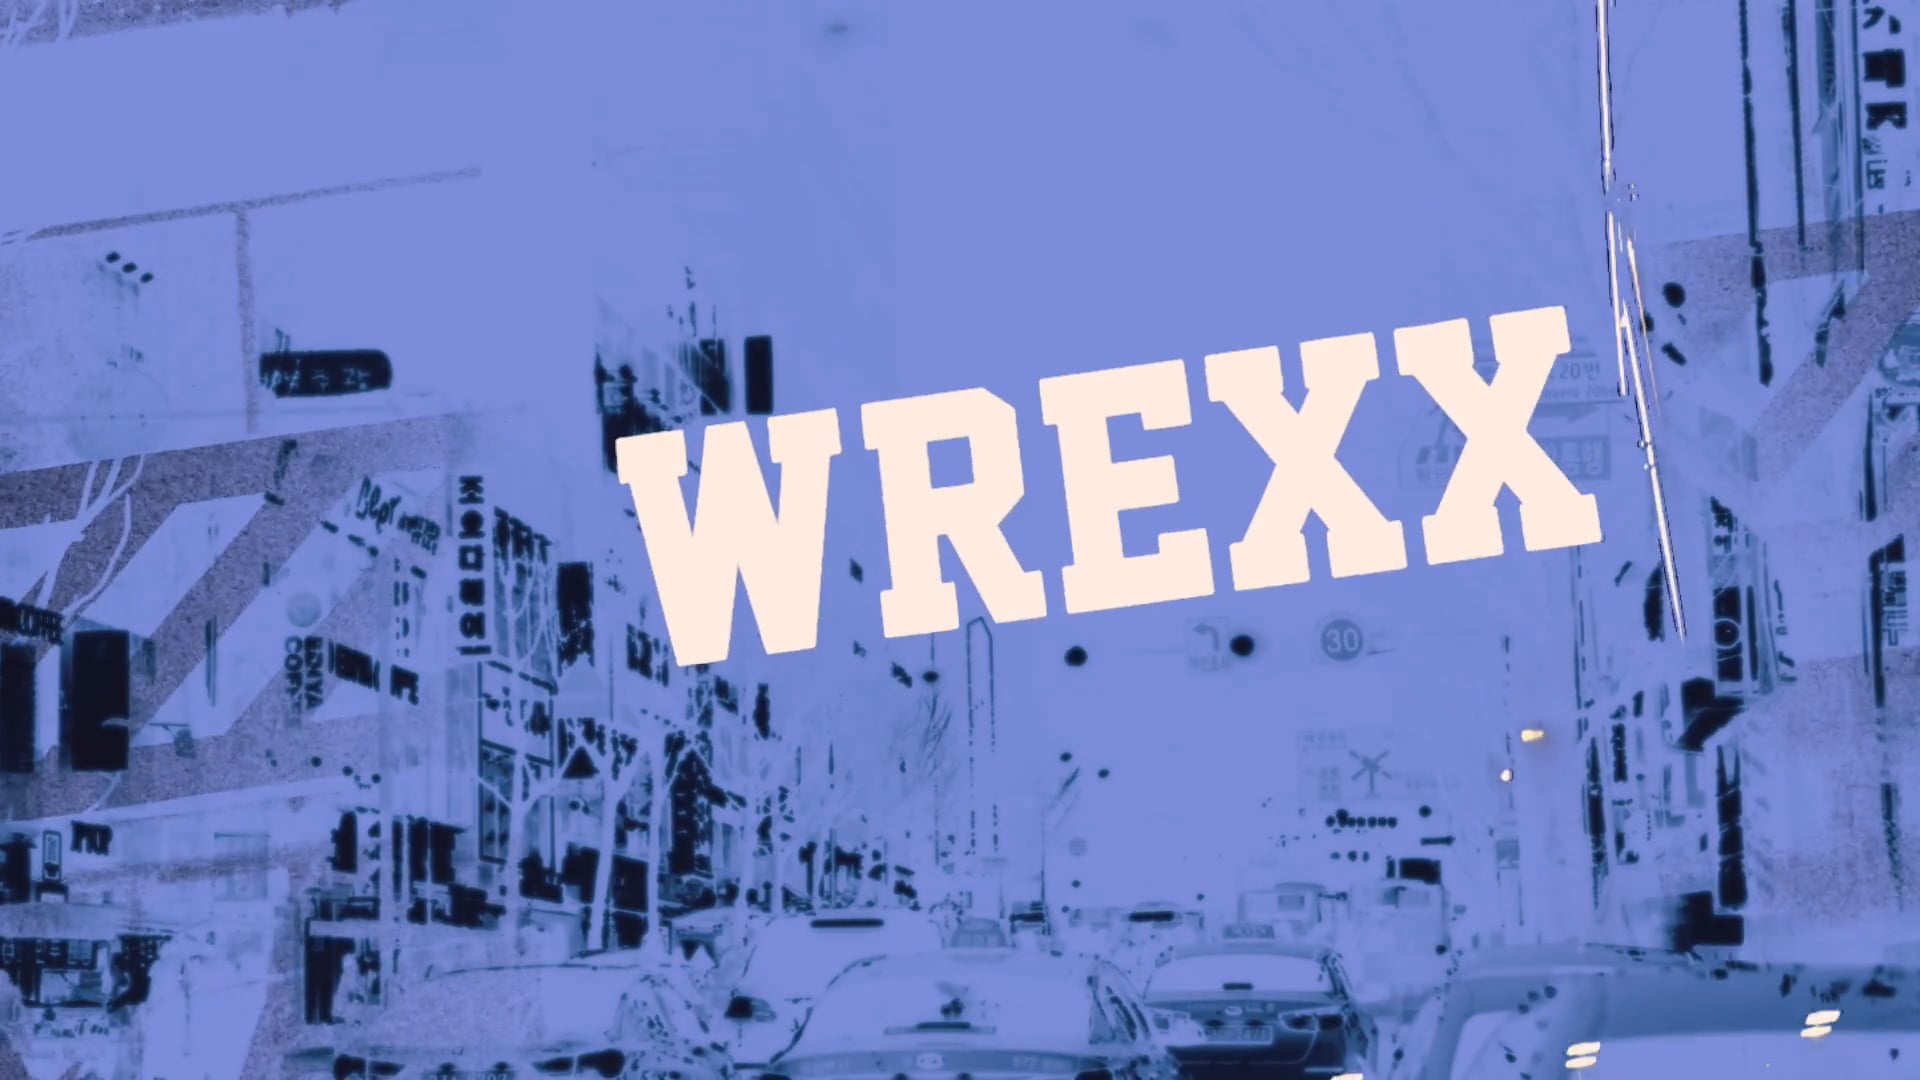 [Wrexx] Wrexx Lounge Club [Trephic]